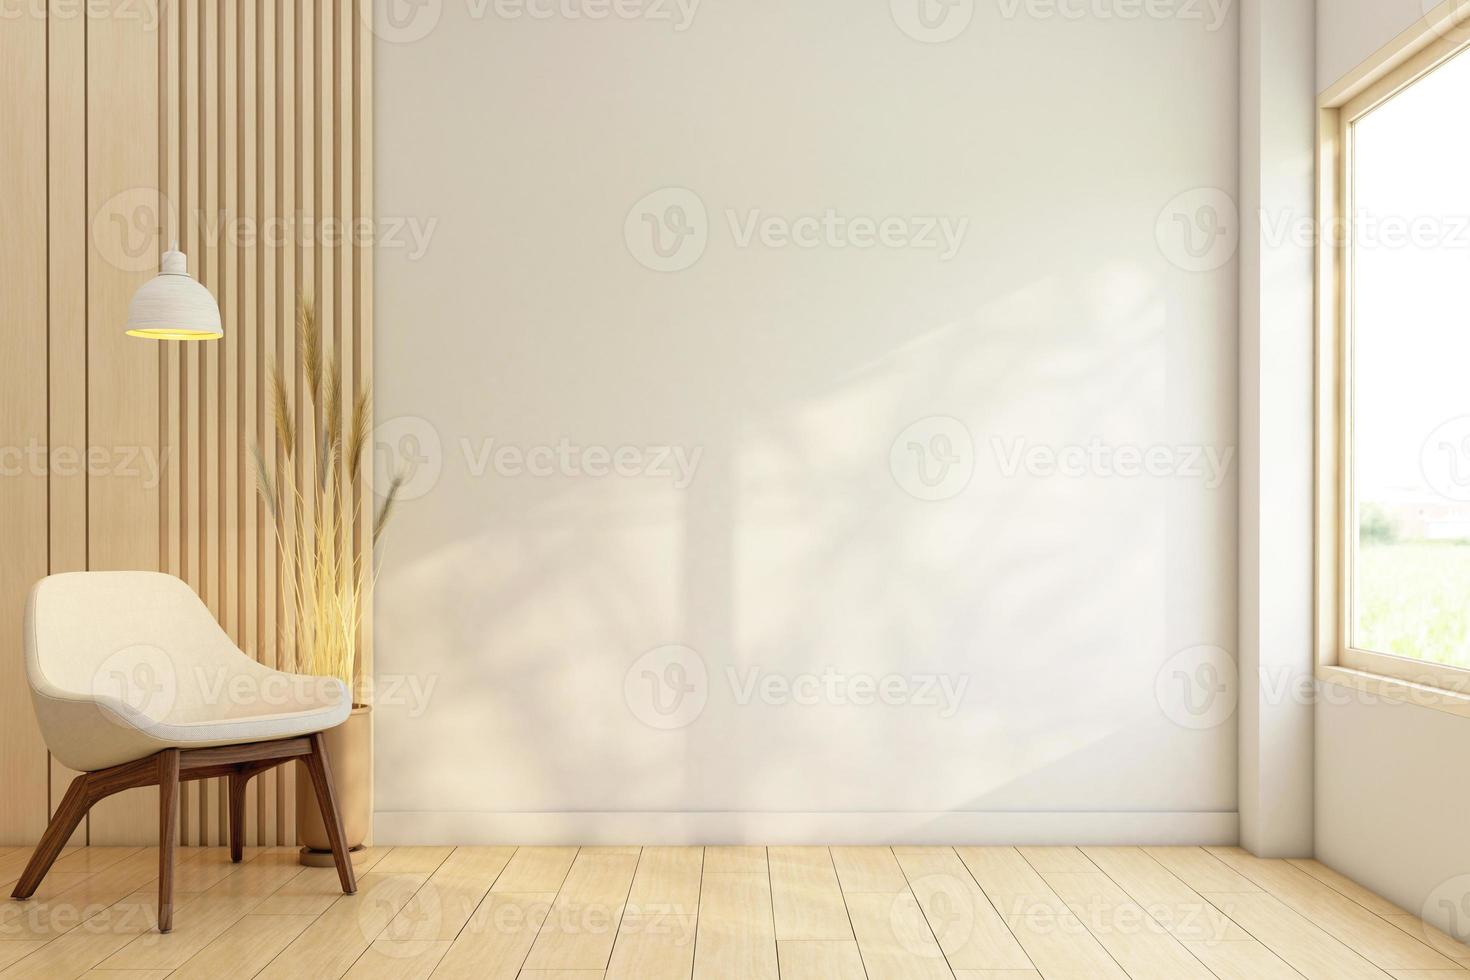 salle vide minimaliste décorée de fenêtres encadrées en bois et d'un mur en lattes de bois. fauteuil et parquet. rendu 3d. photo